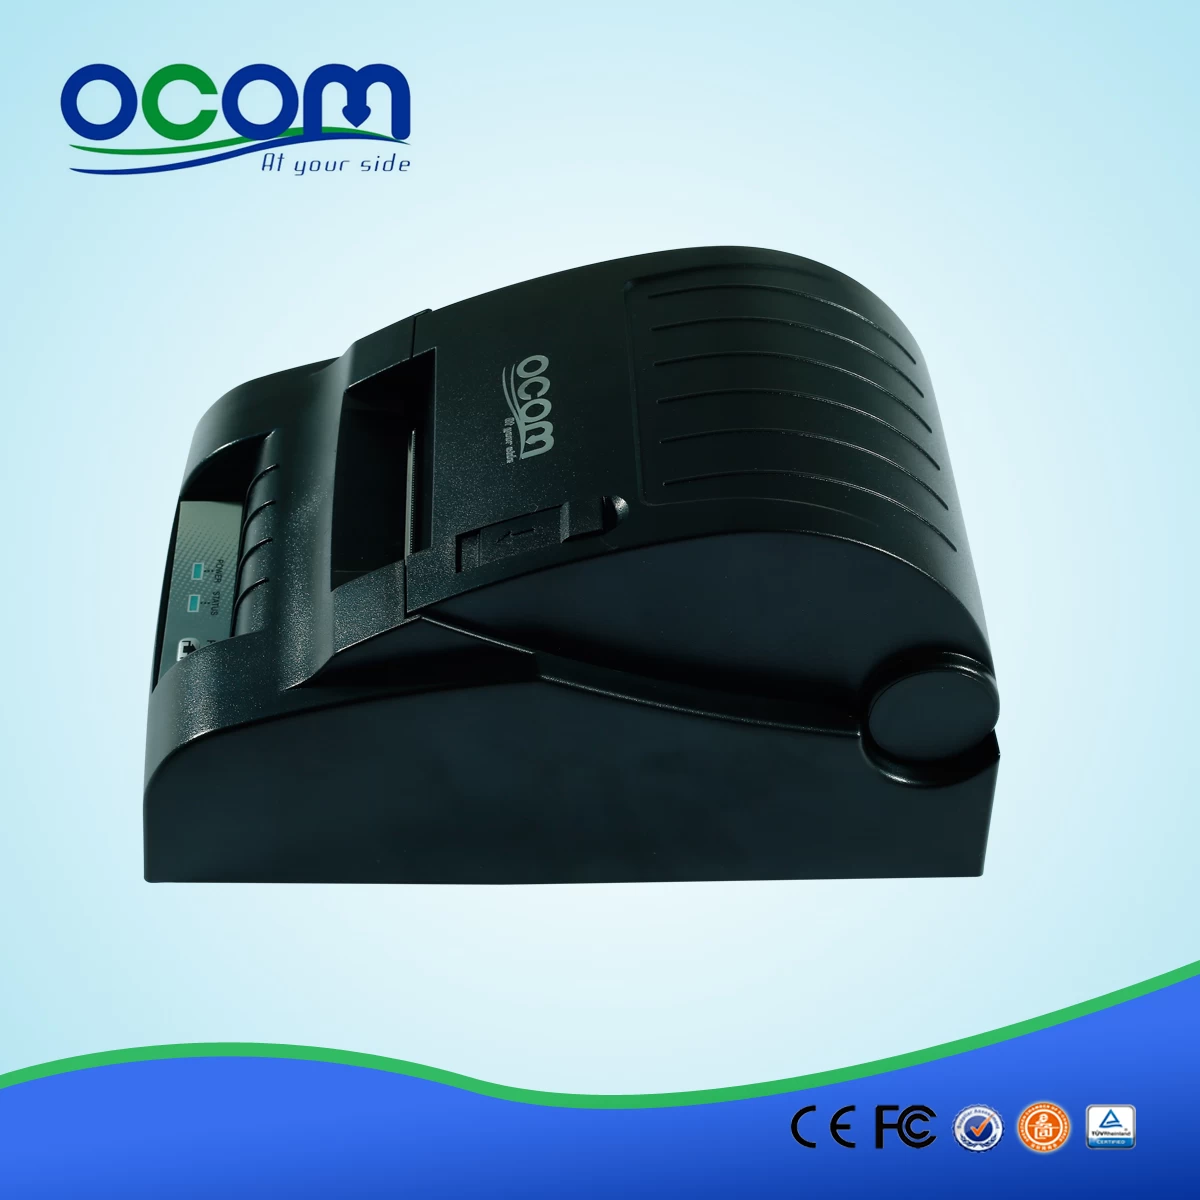 (OCPP-582) 58mm Mini Thermal Ticket Printer